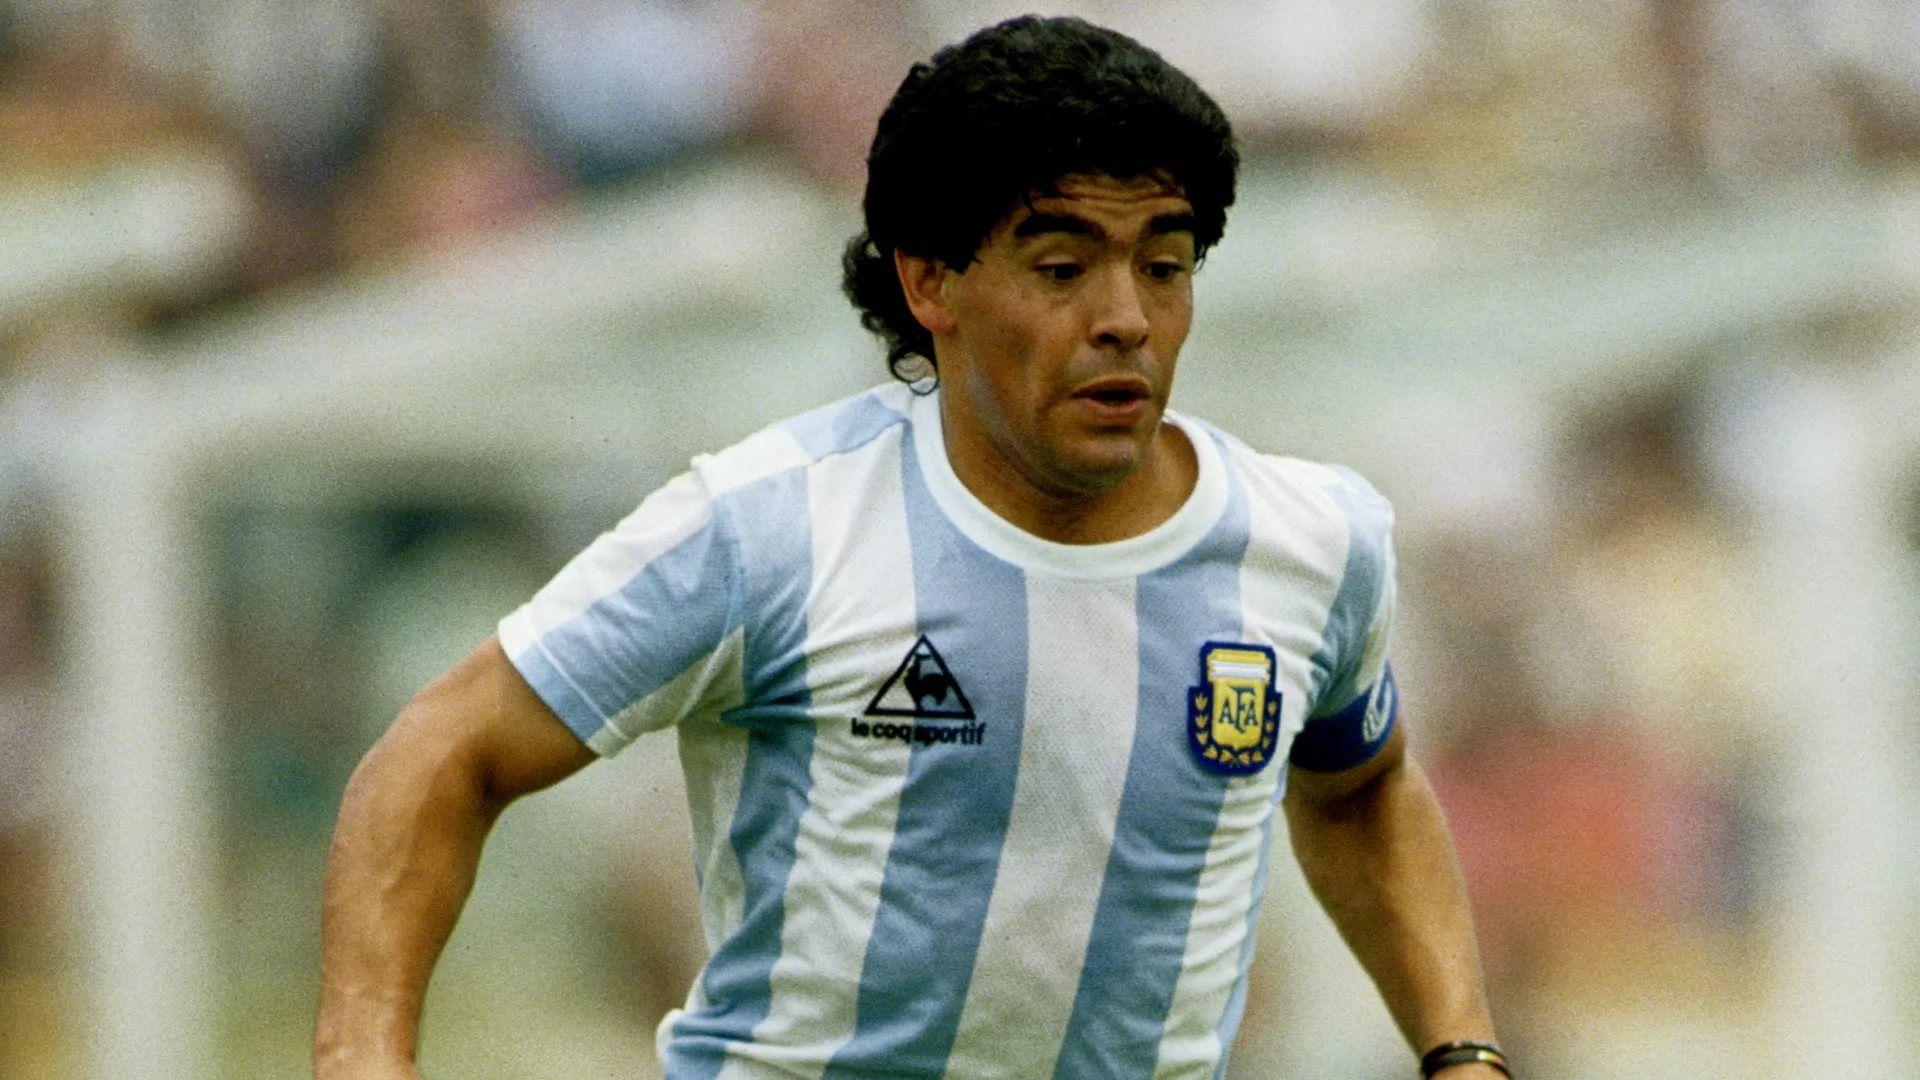 1920 x 1080 · jpeg - Maradona 1920x1080 Wallpapers - Wallpaper Cave